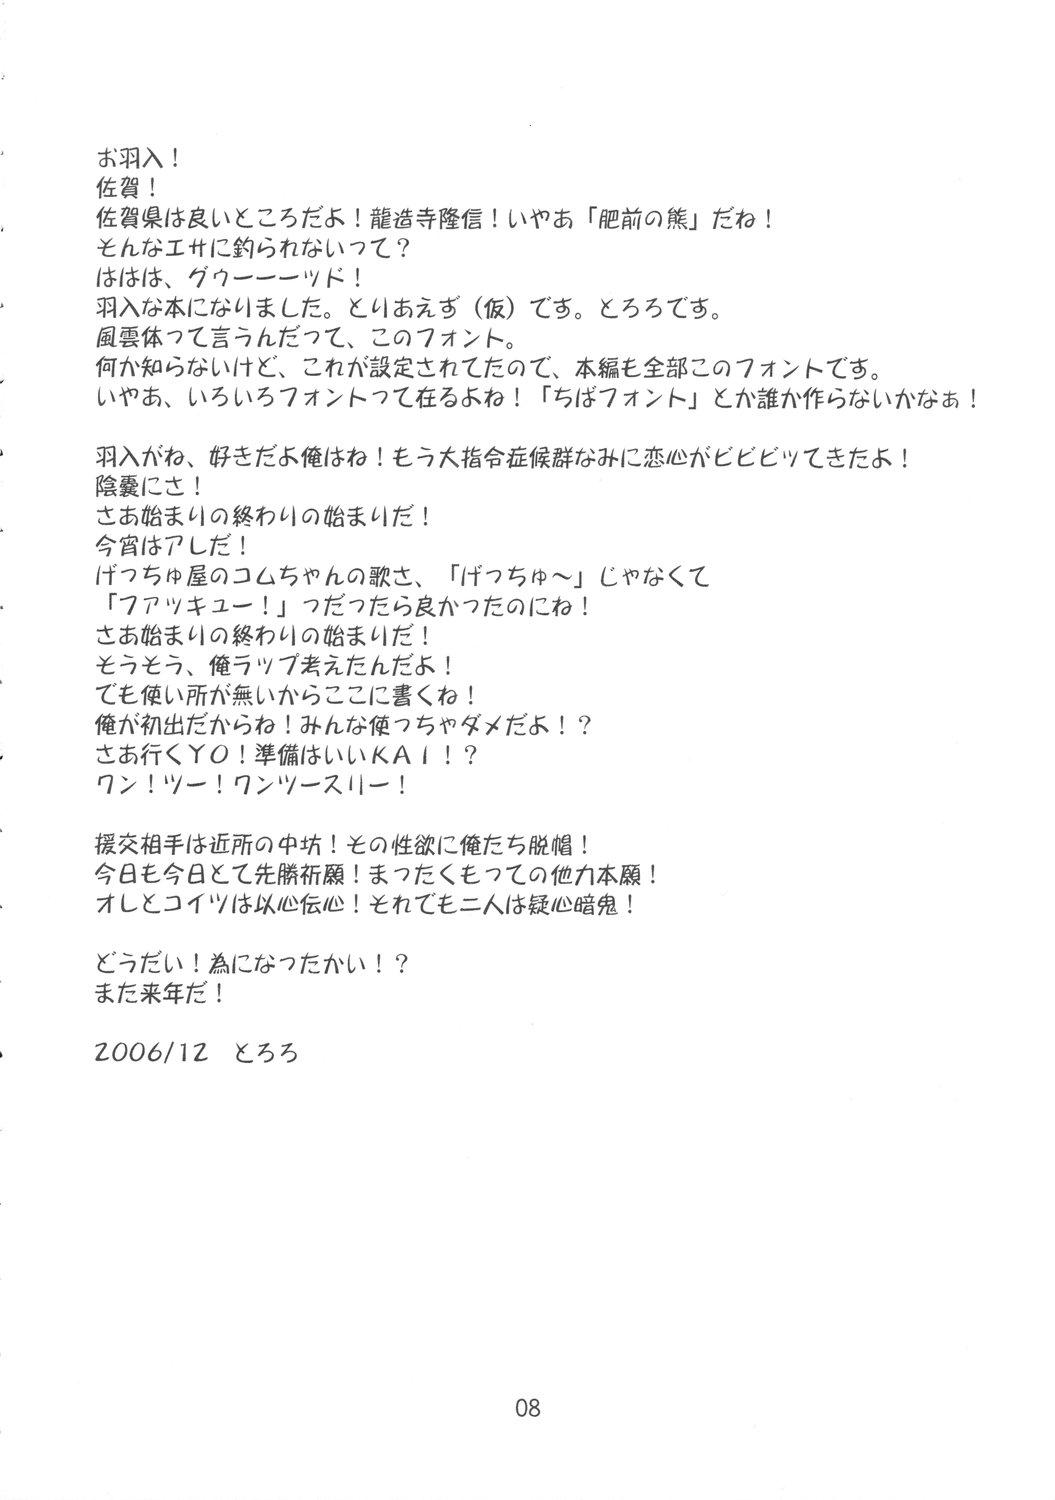 Carro Yume no Kakera - Higurashi no naku koro ni Humiliation - Page 7